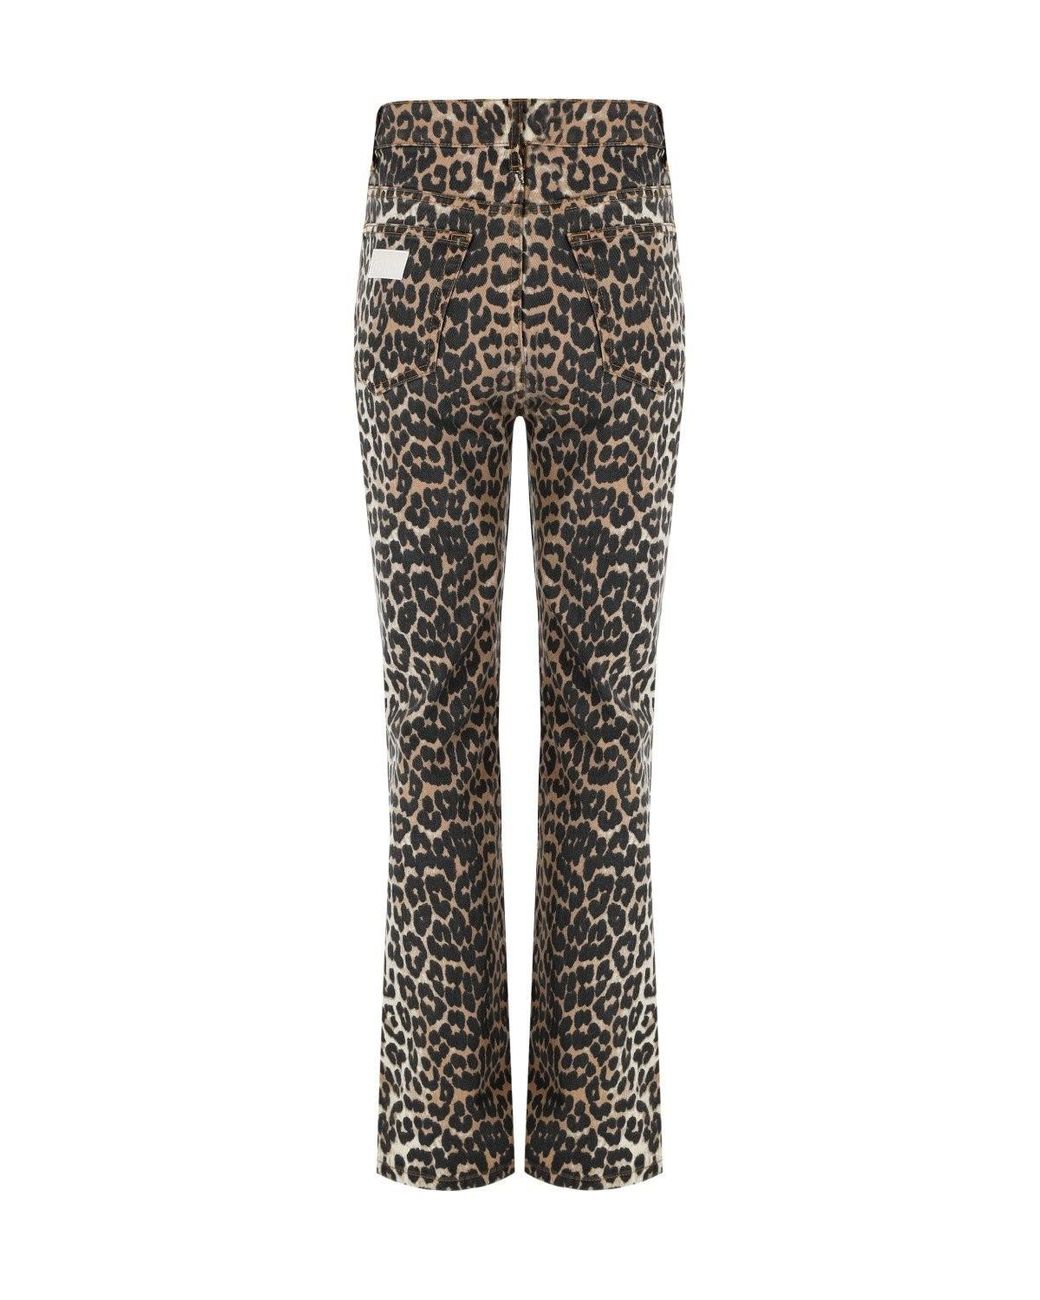 Ganni Leopard Betzy Jeans in Gray